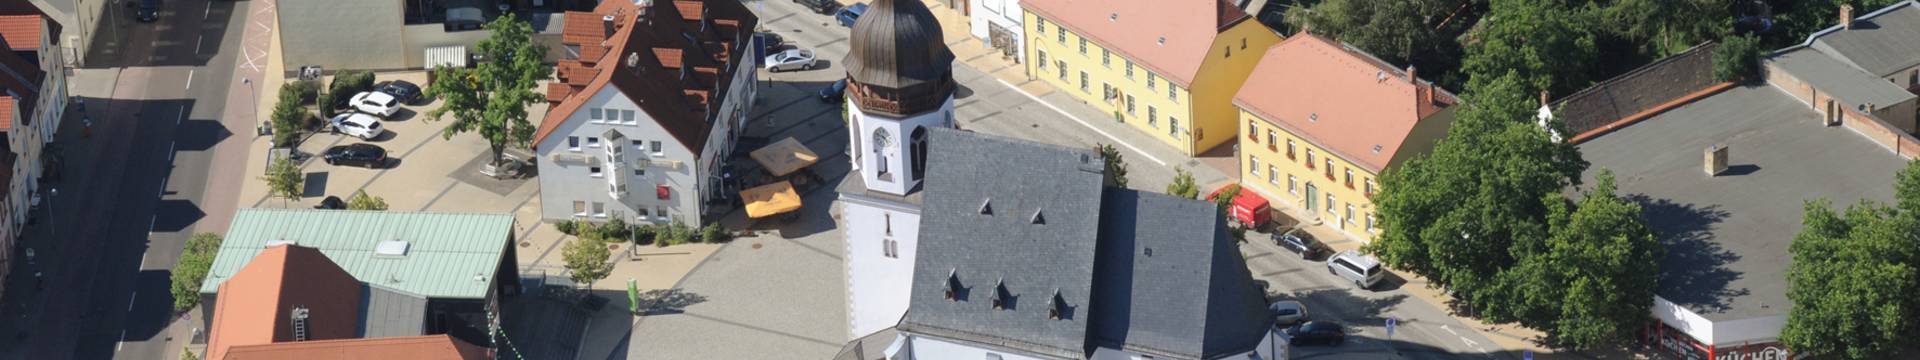 Blick auf das Zentrum von Markranstädt mit der Kirche St. Laurentius und dem Bürgerrathaus